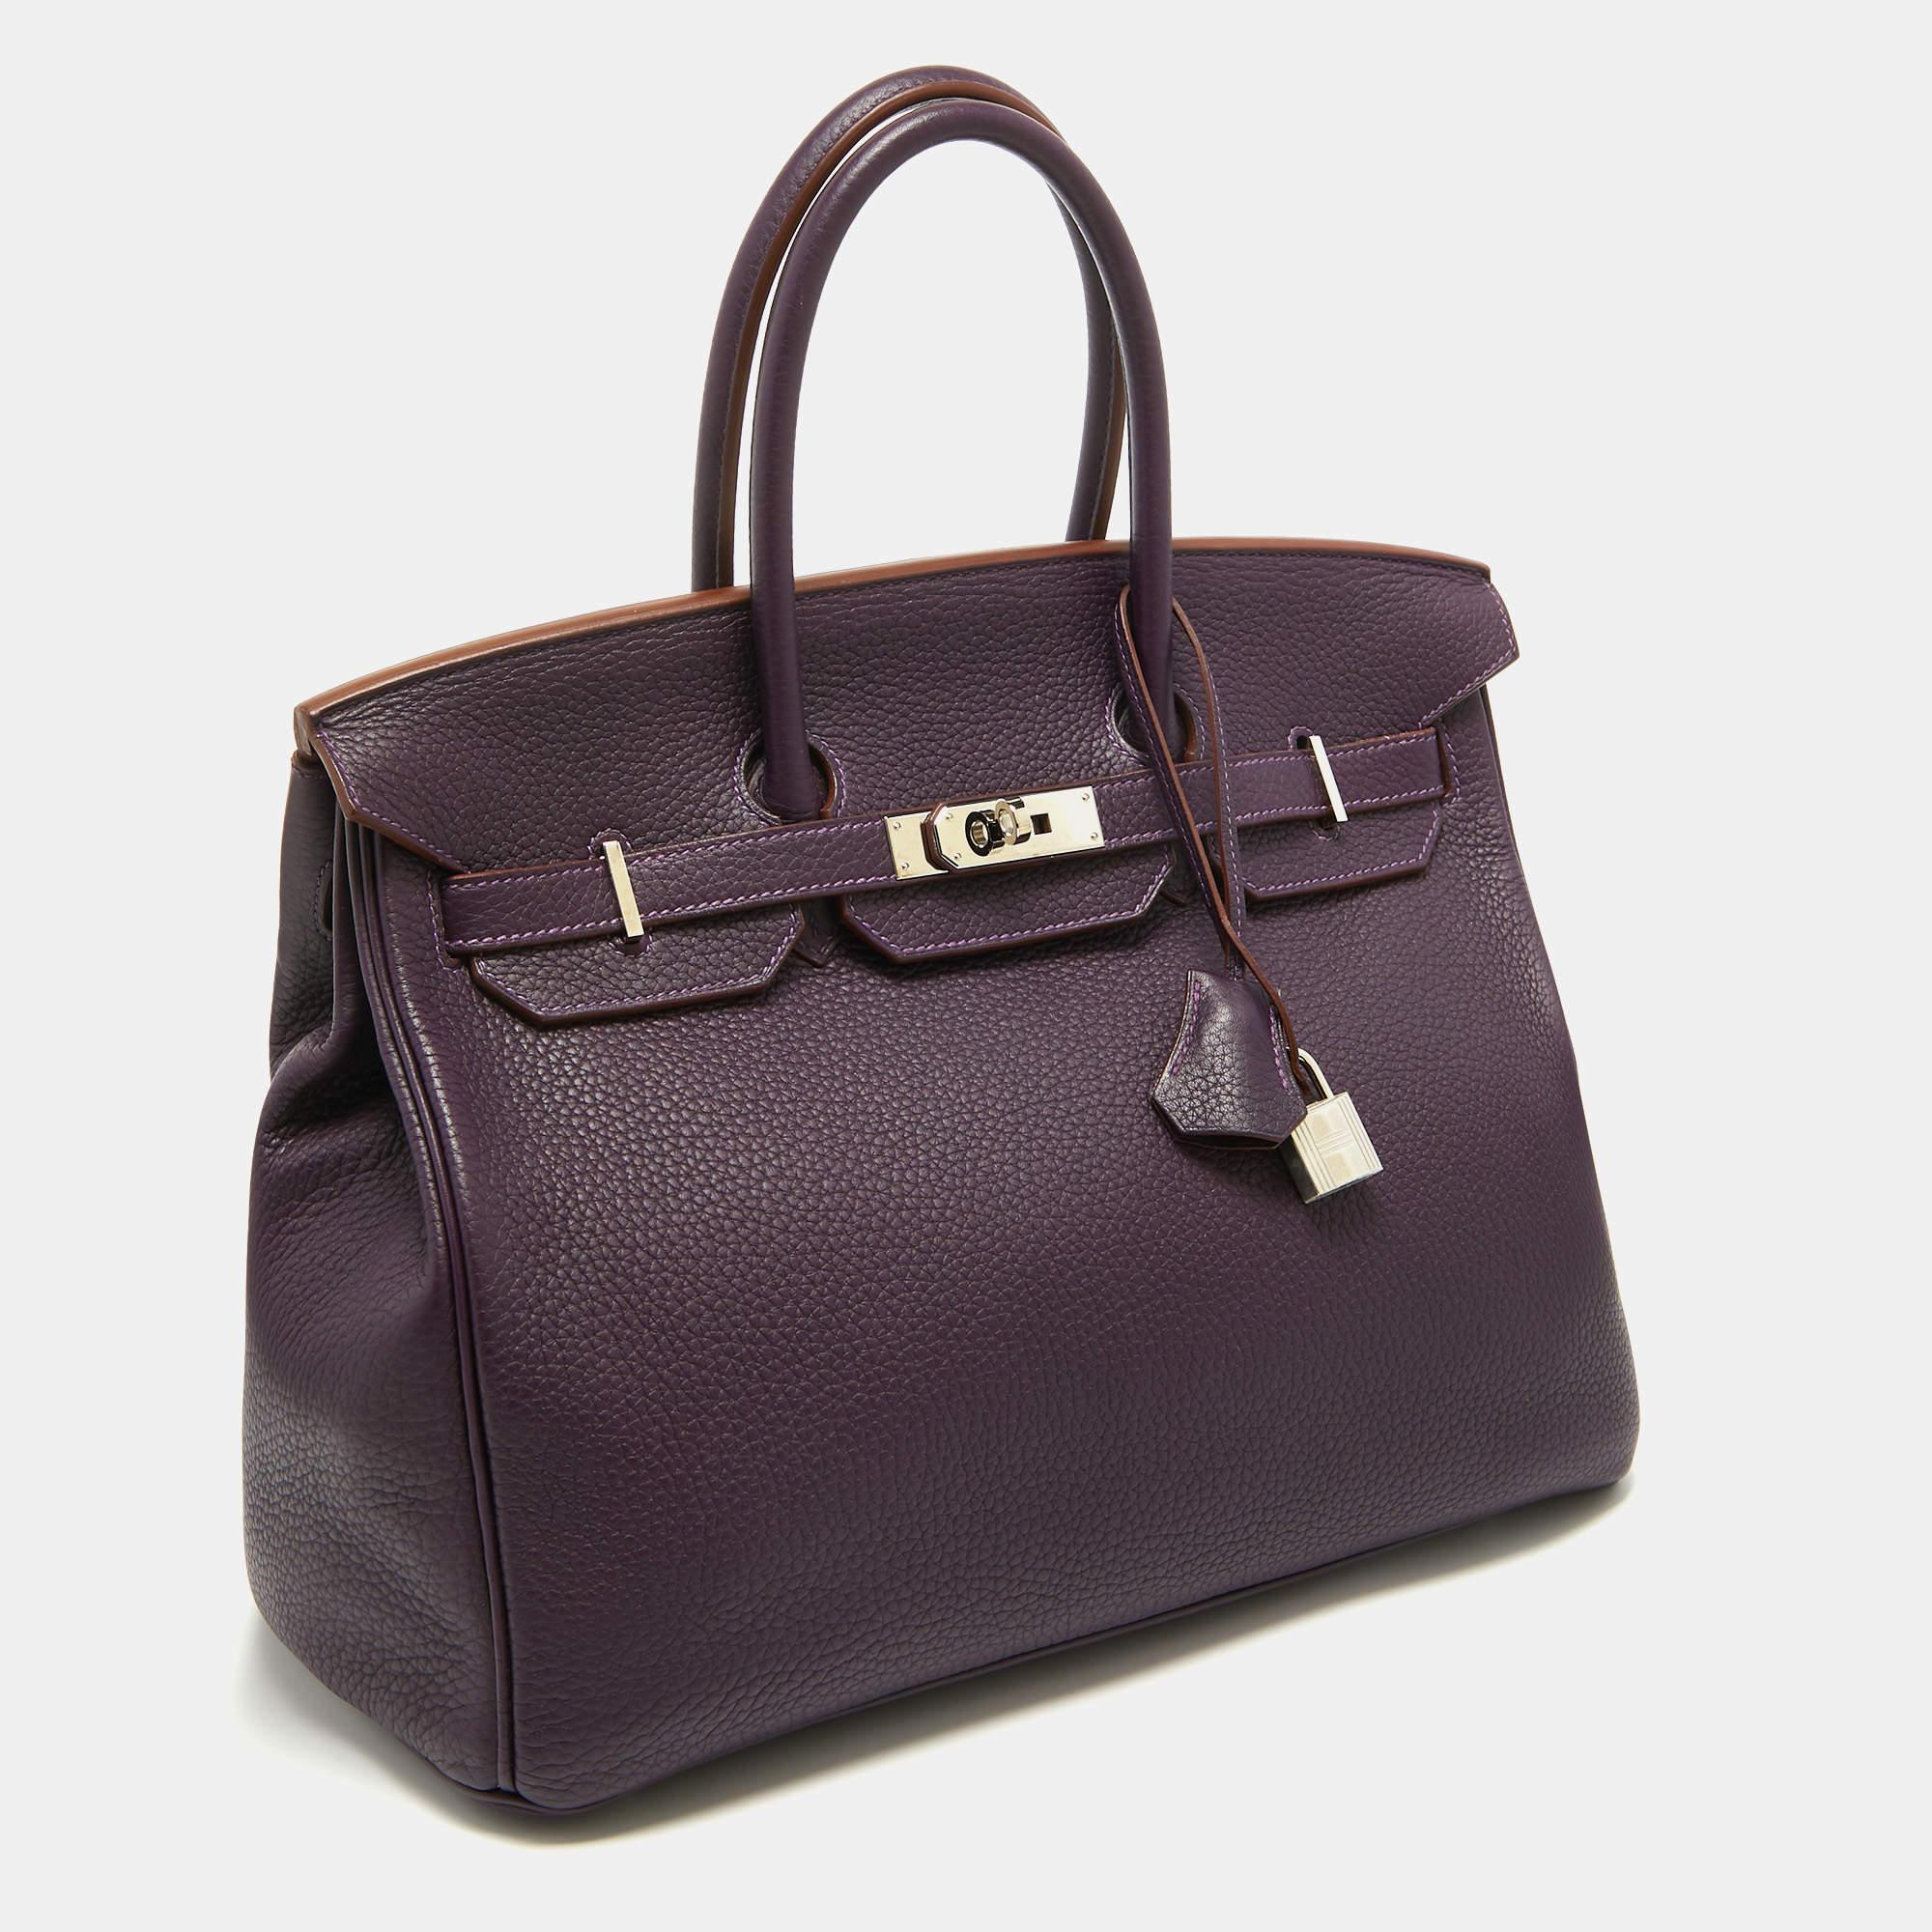 Die Hermès Birkin ist zu Recht eine der begehrtesten Handtaschen der Welt. Die Birkin wird von erfahrenen Kunsthandwerkern in stundenlanger Handarbeit aus hochwertigem Leder hergestellt. Die mit viel Know-how gefertigte Tasche verfügt über zwei